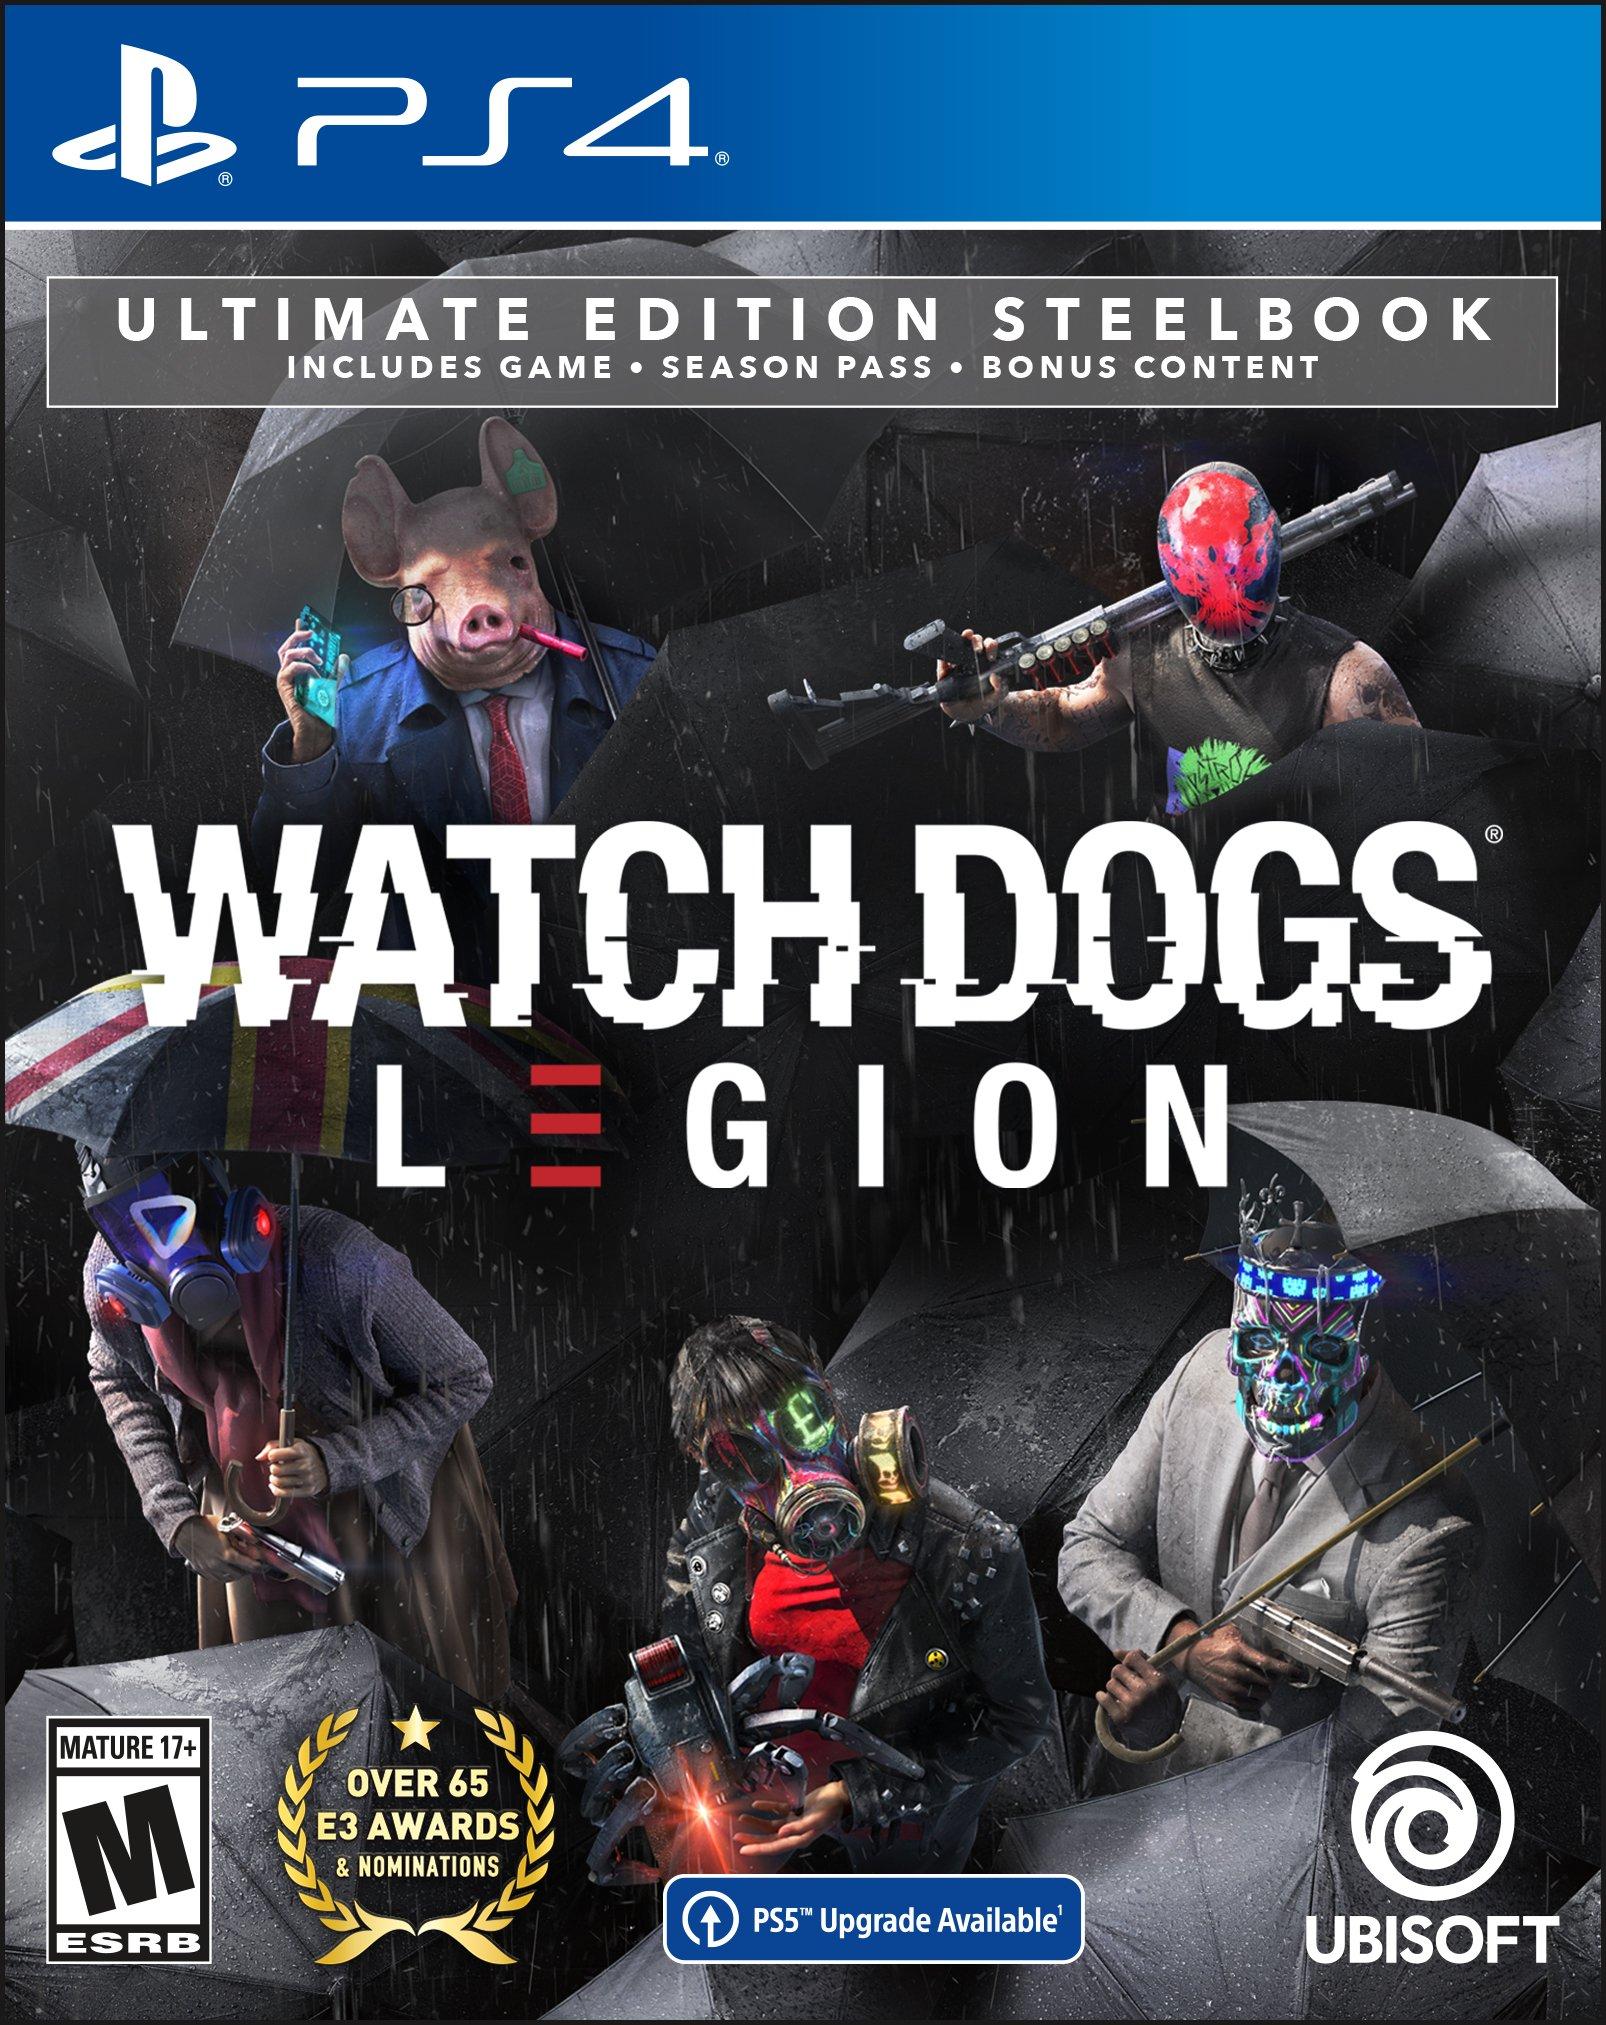 TOT GAME on X: Watch Dogs: Legion Deluxe Edition, Steam'de %85 indirimle  315 TL'den 47,25 TL'ye düştü.  / X